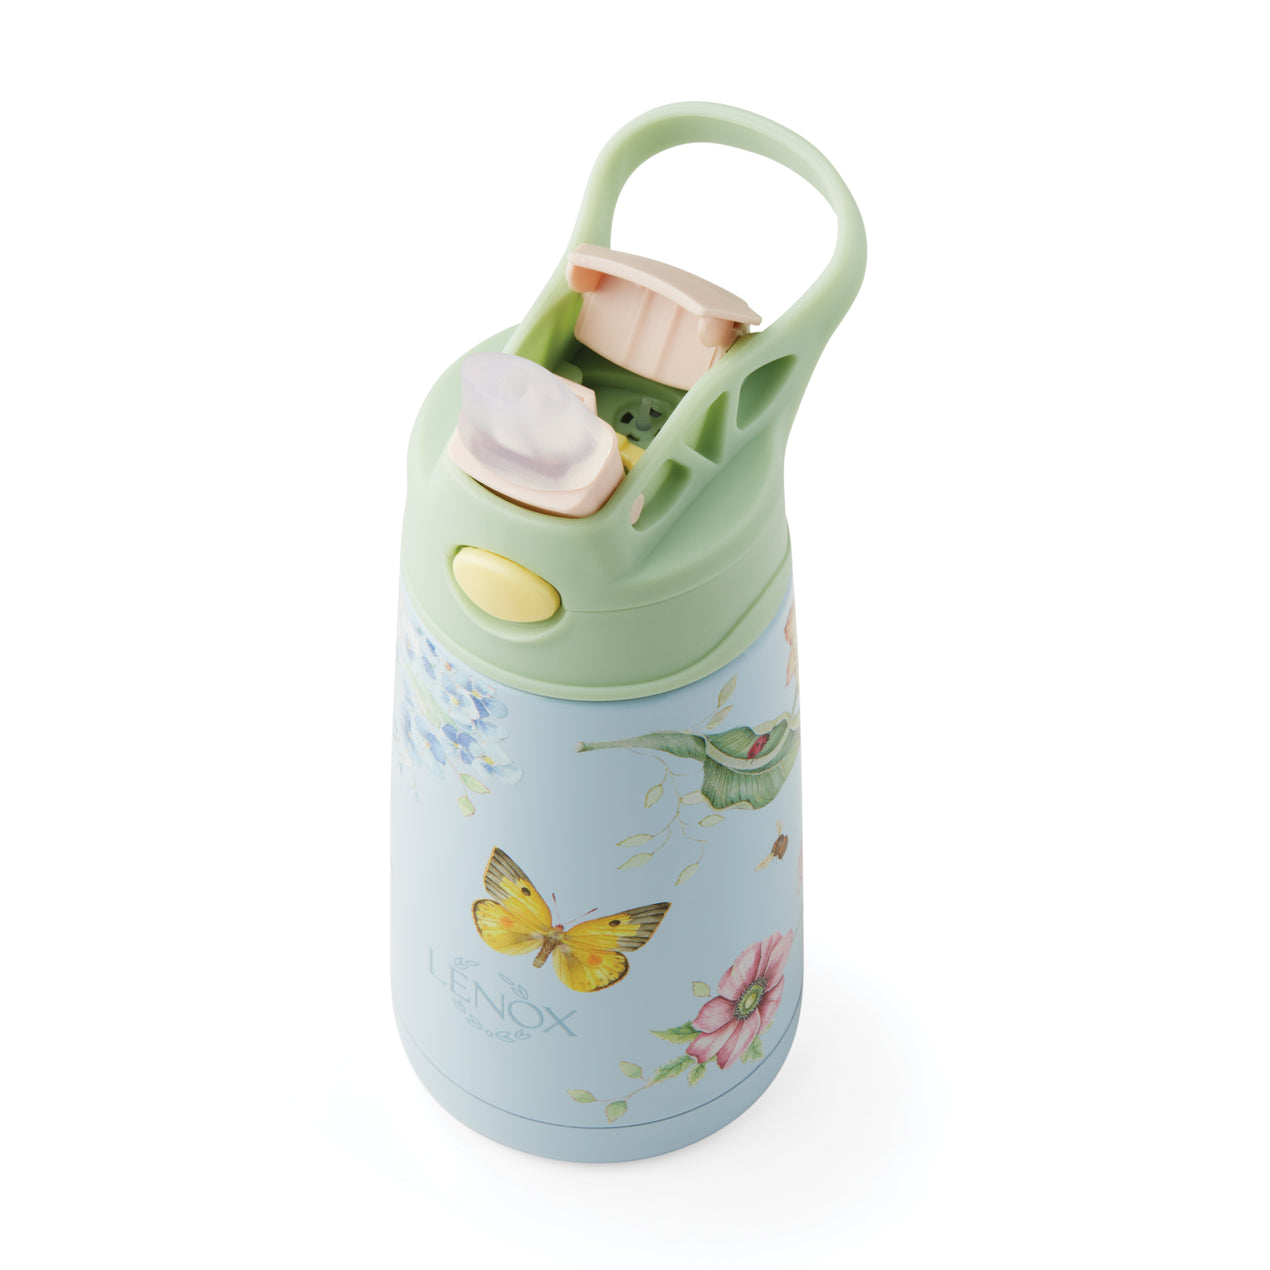 Flowers & Butterflies - Personalized Kids Water Bottle - 12oz